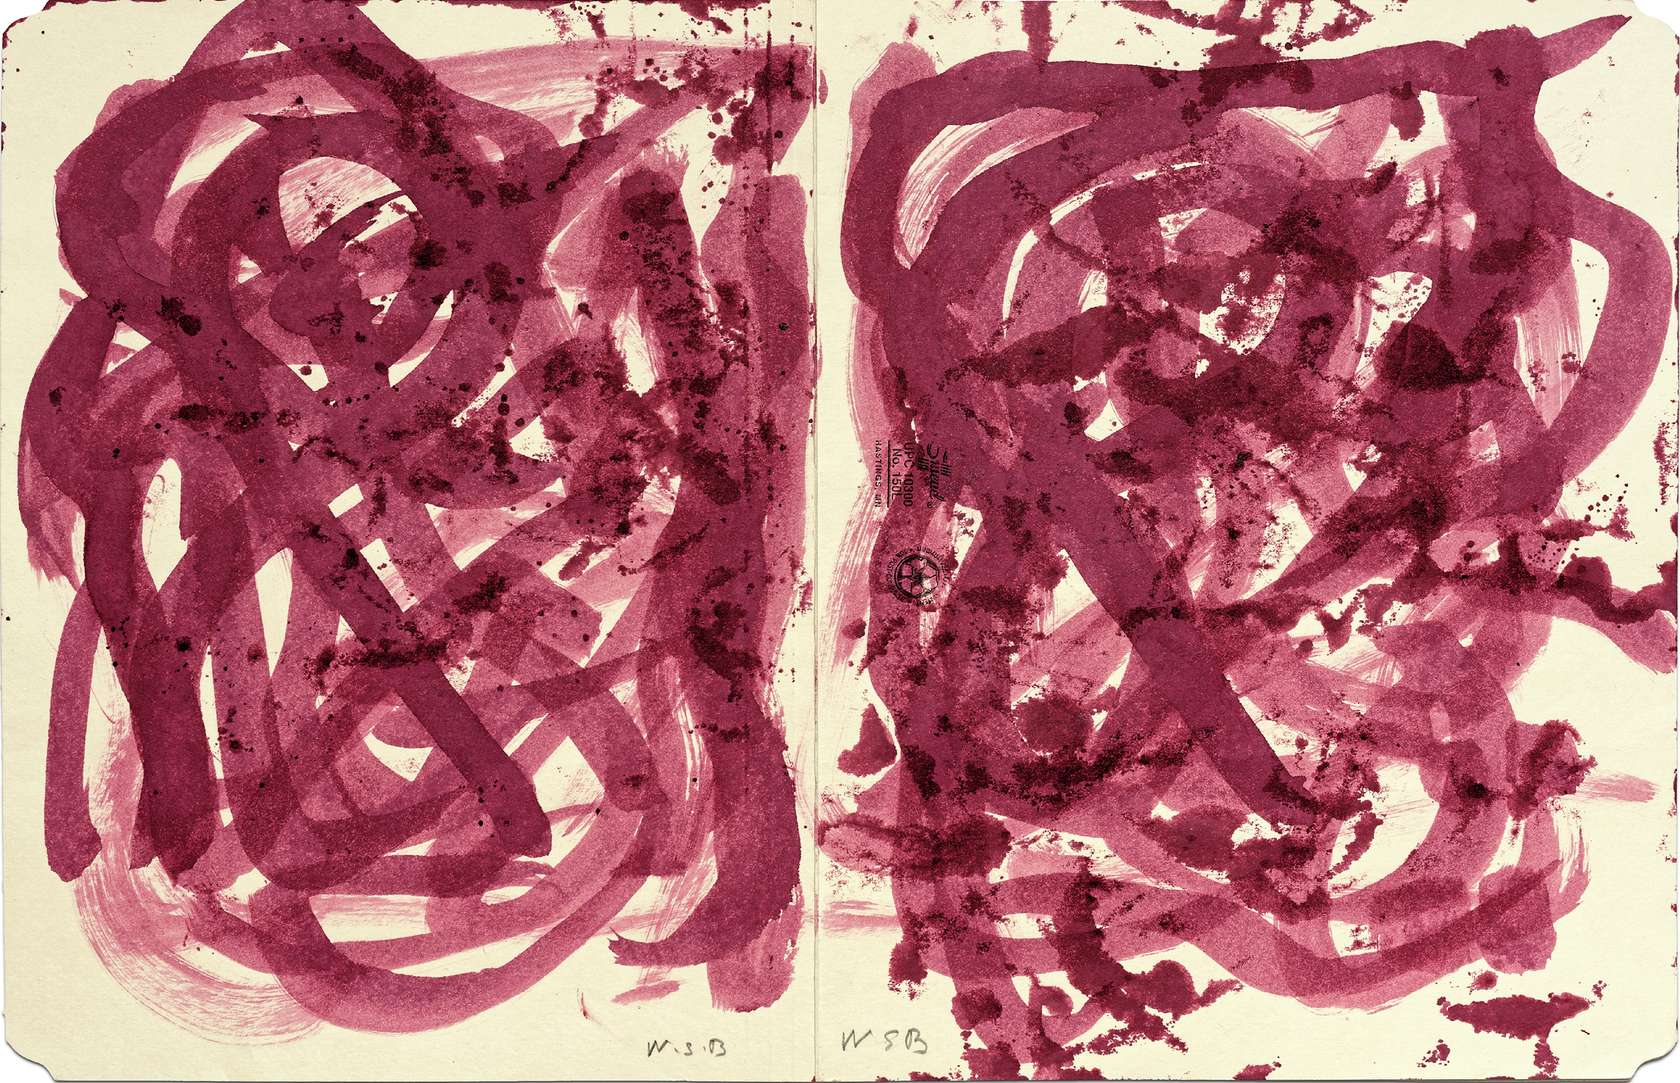 William S. Burroughs, Untitled, 1992 Encre sur chemise cartonnée30 × 46.5 cm / 11 6/8 × 18 2/8 in. | 42 × 59 × 2 cm / 16 1/2 × 23 2/8 × 6/8 in. (encadré/framed)